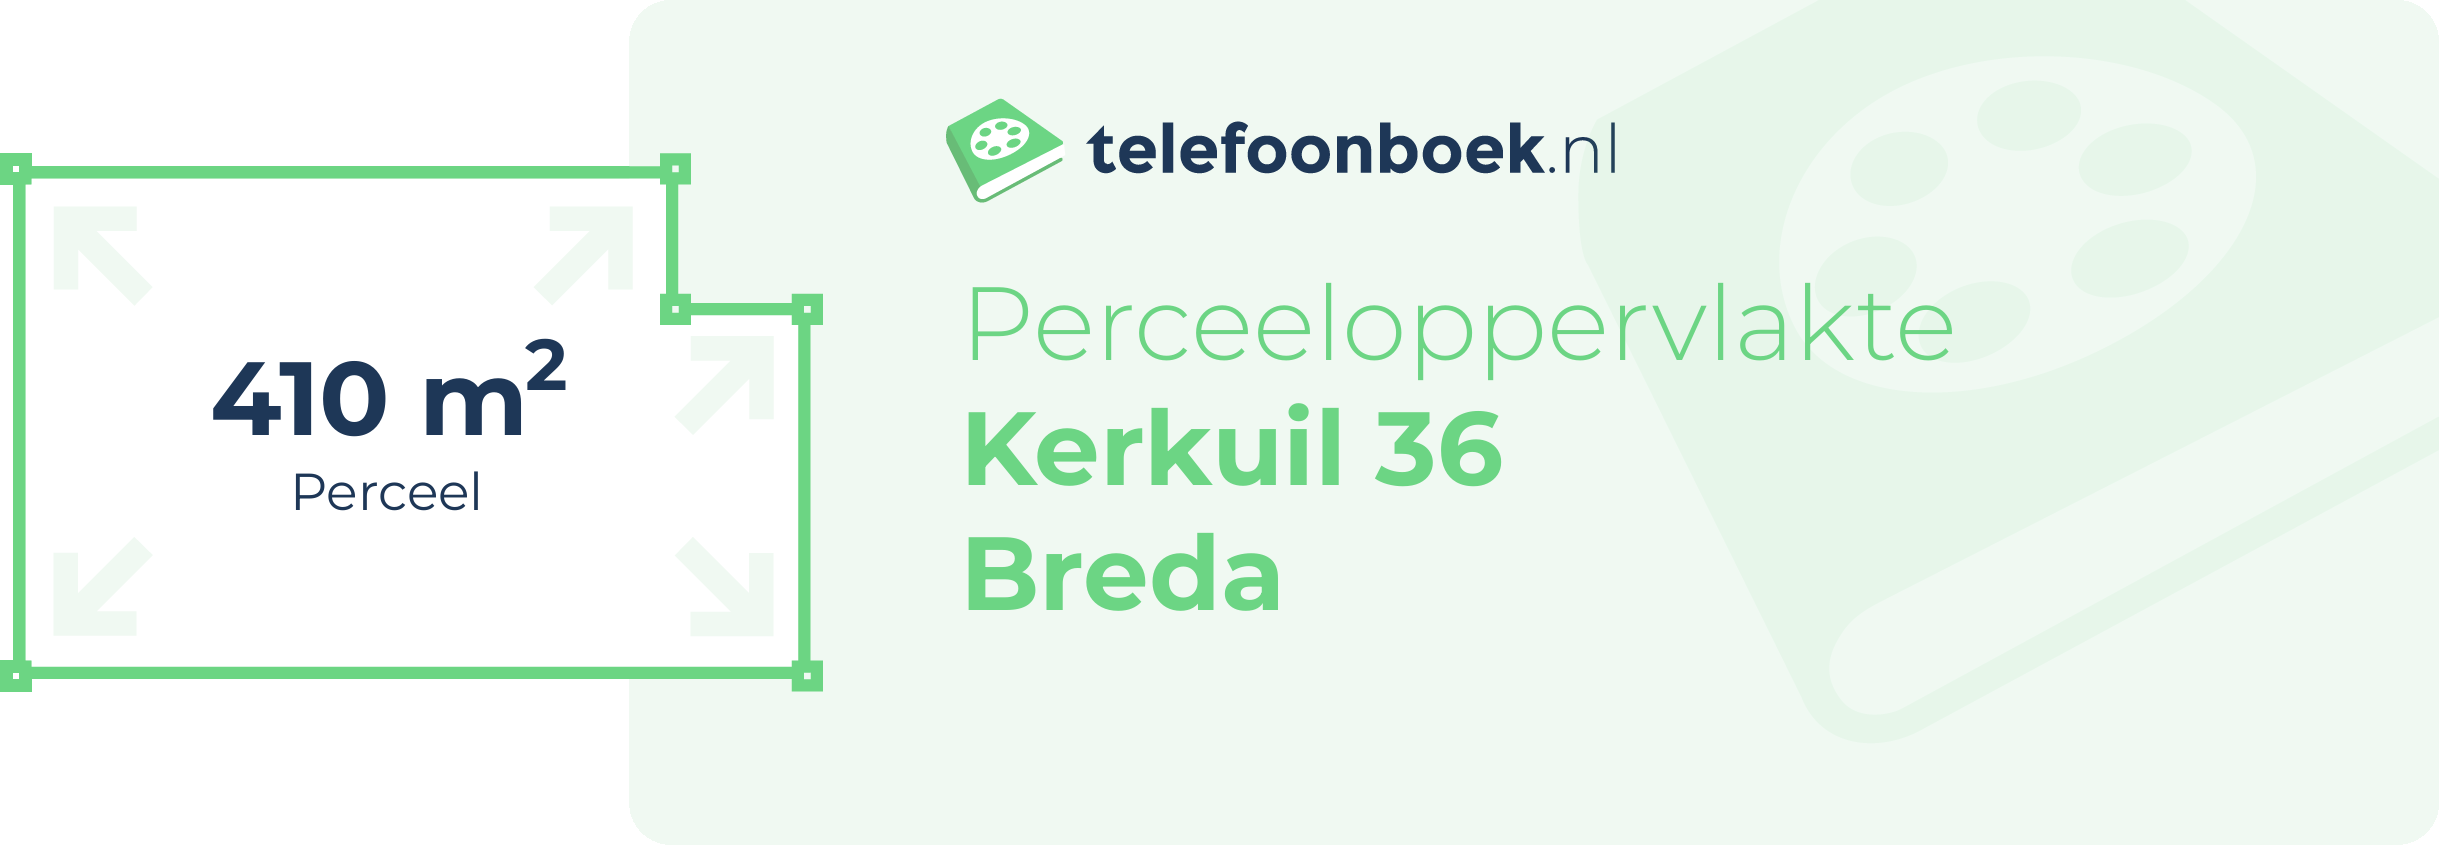 Perceeloppervlakte Kerkuil 36 Breda